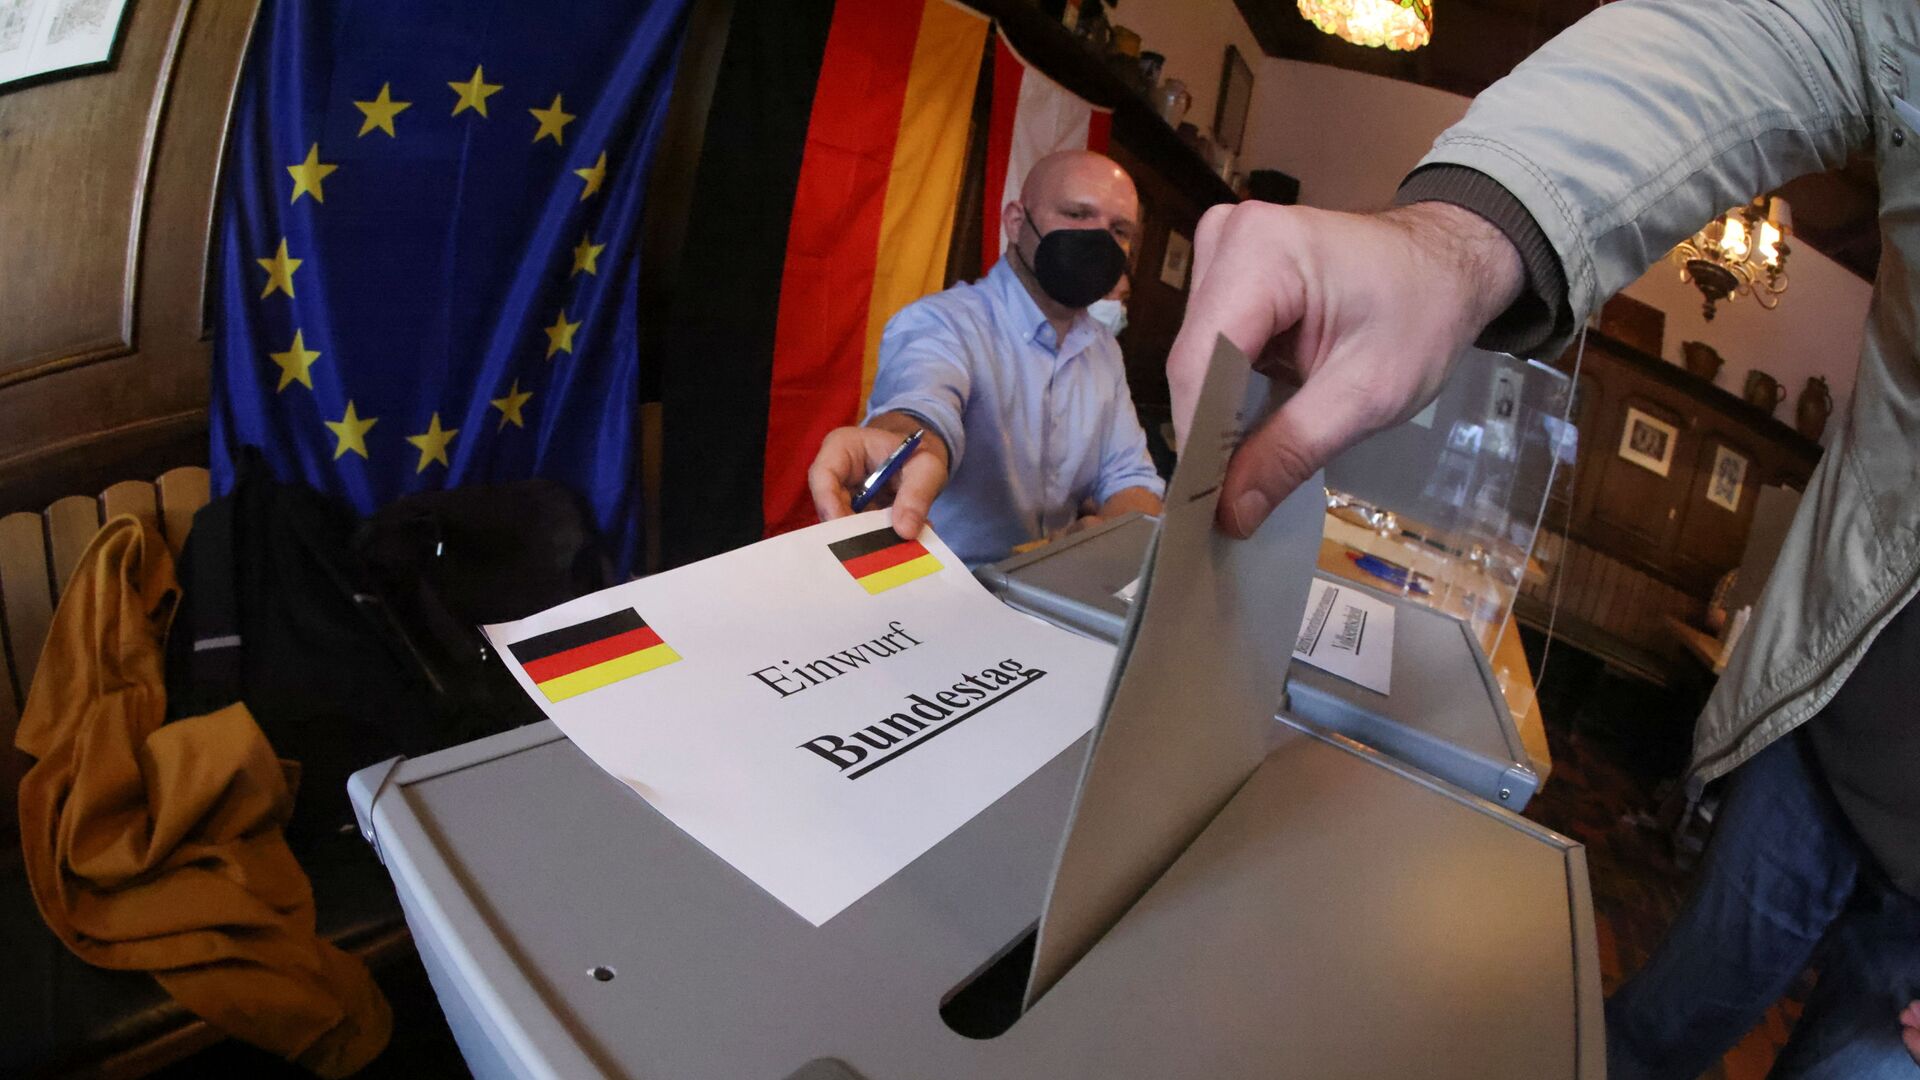 Bỏ phiếu trong cuộc bầu cử quốc hội ở Berlin, Đức - Sputnik Việt Nam, 1920, 28.09.2021